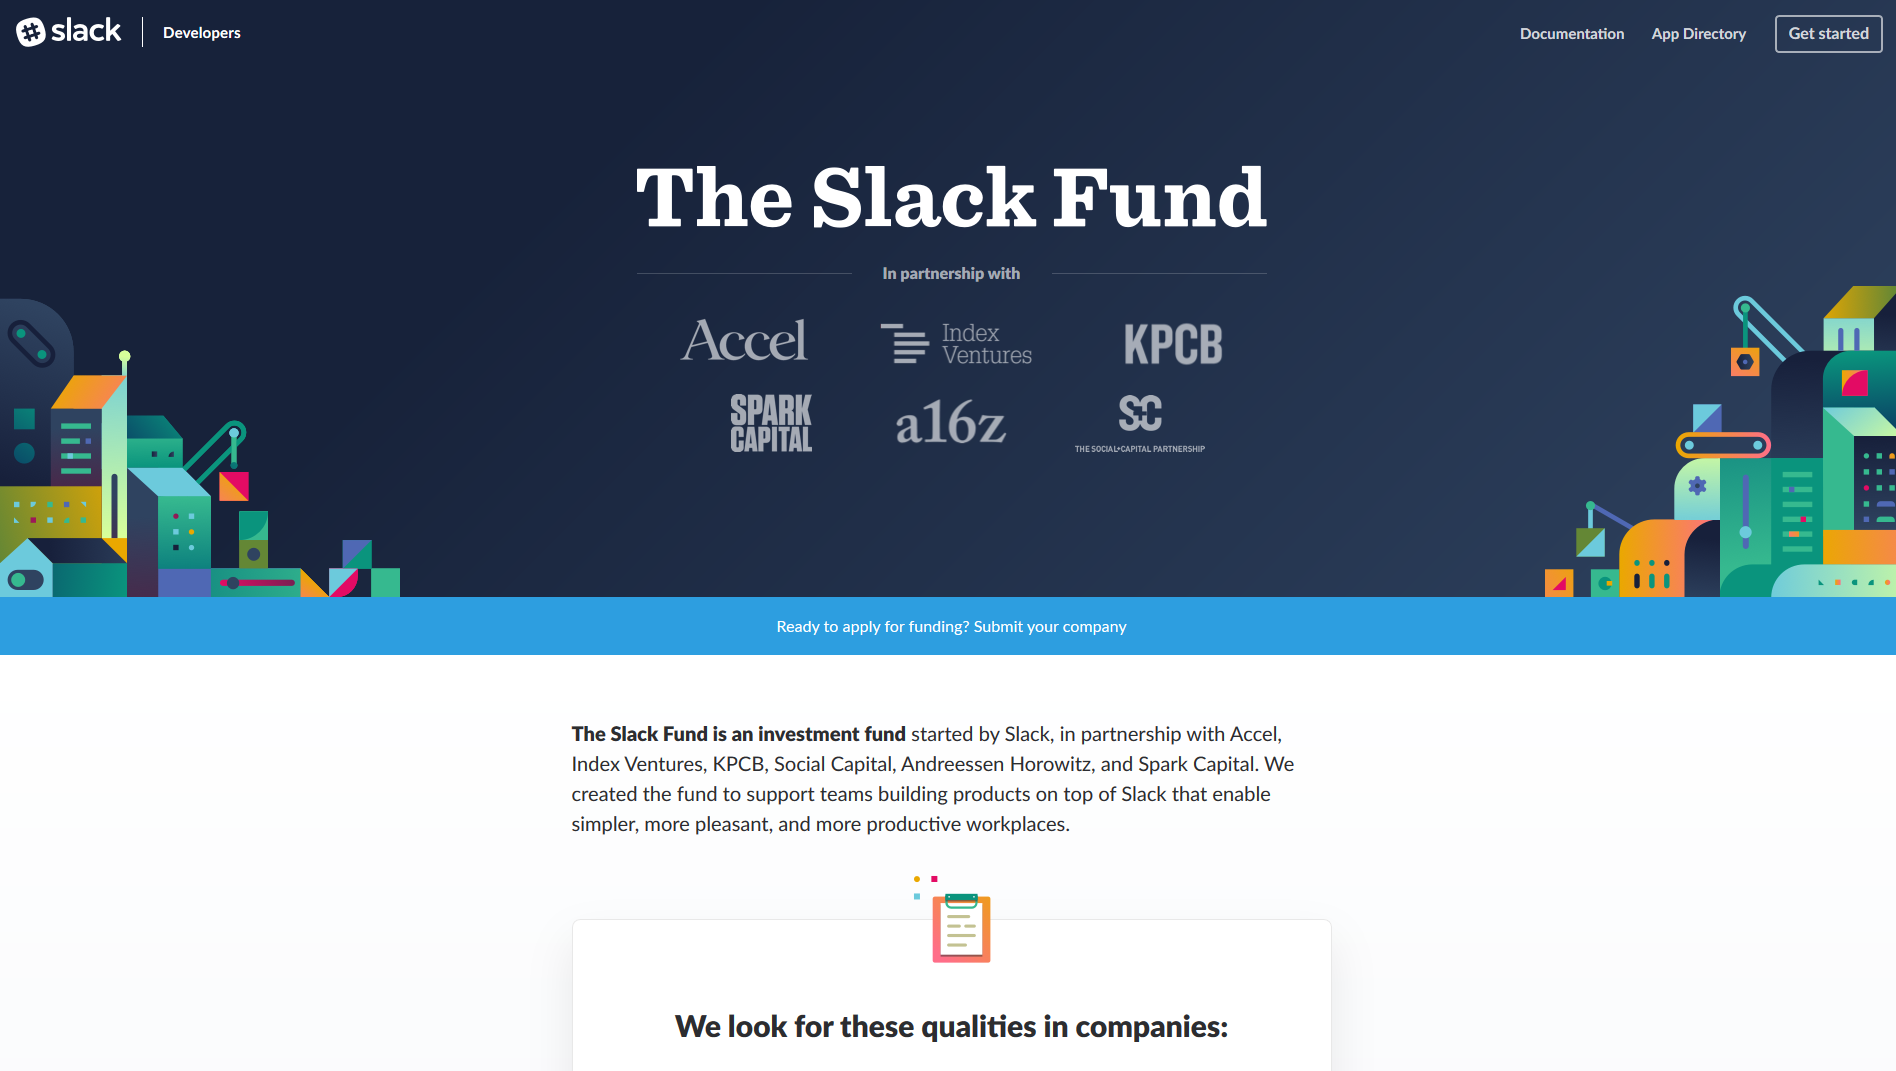 slack website